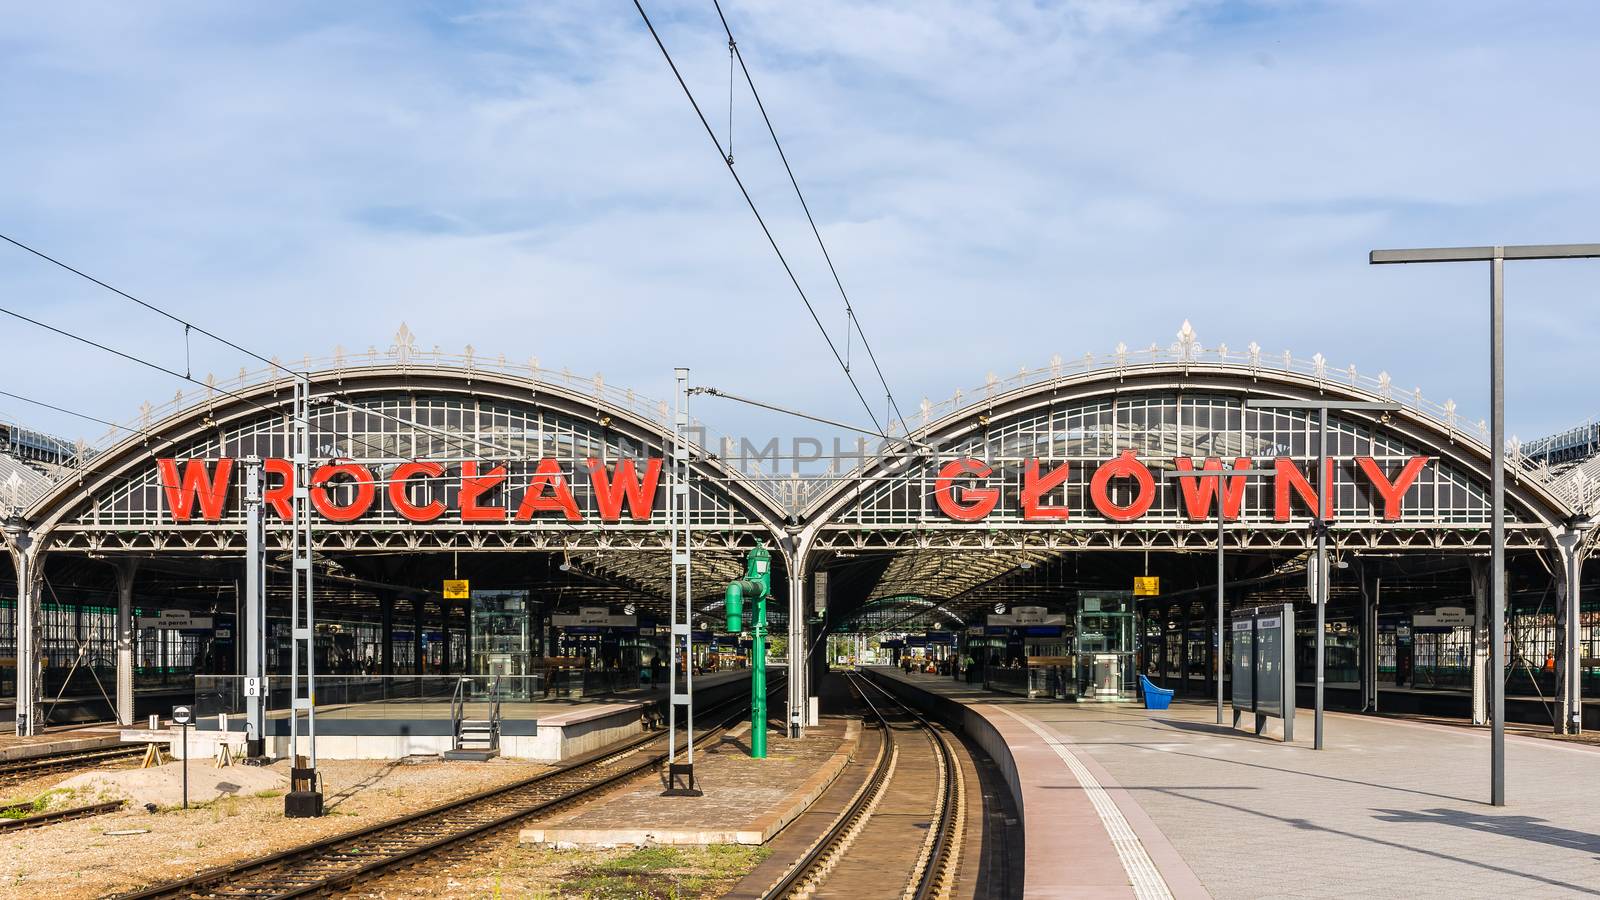 Wroclaw Main Railway Station by pawel_szczepanski